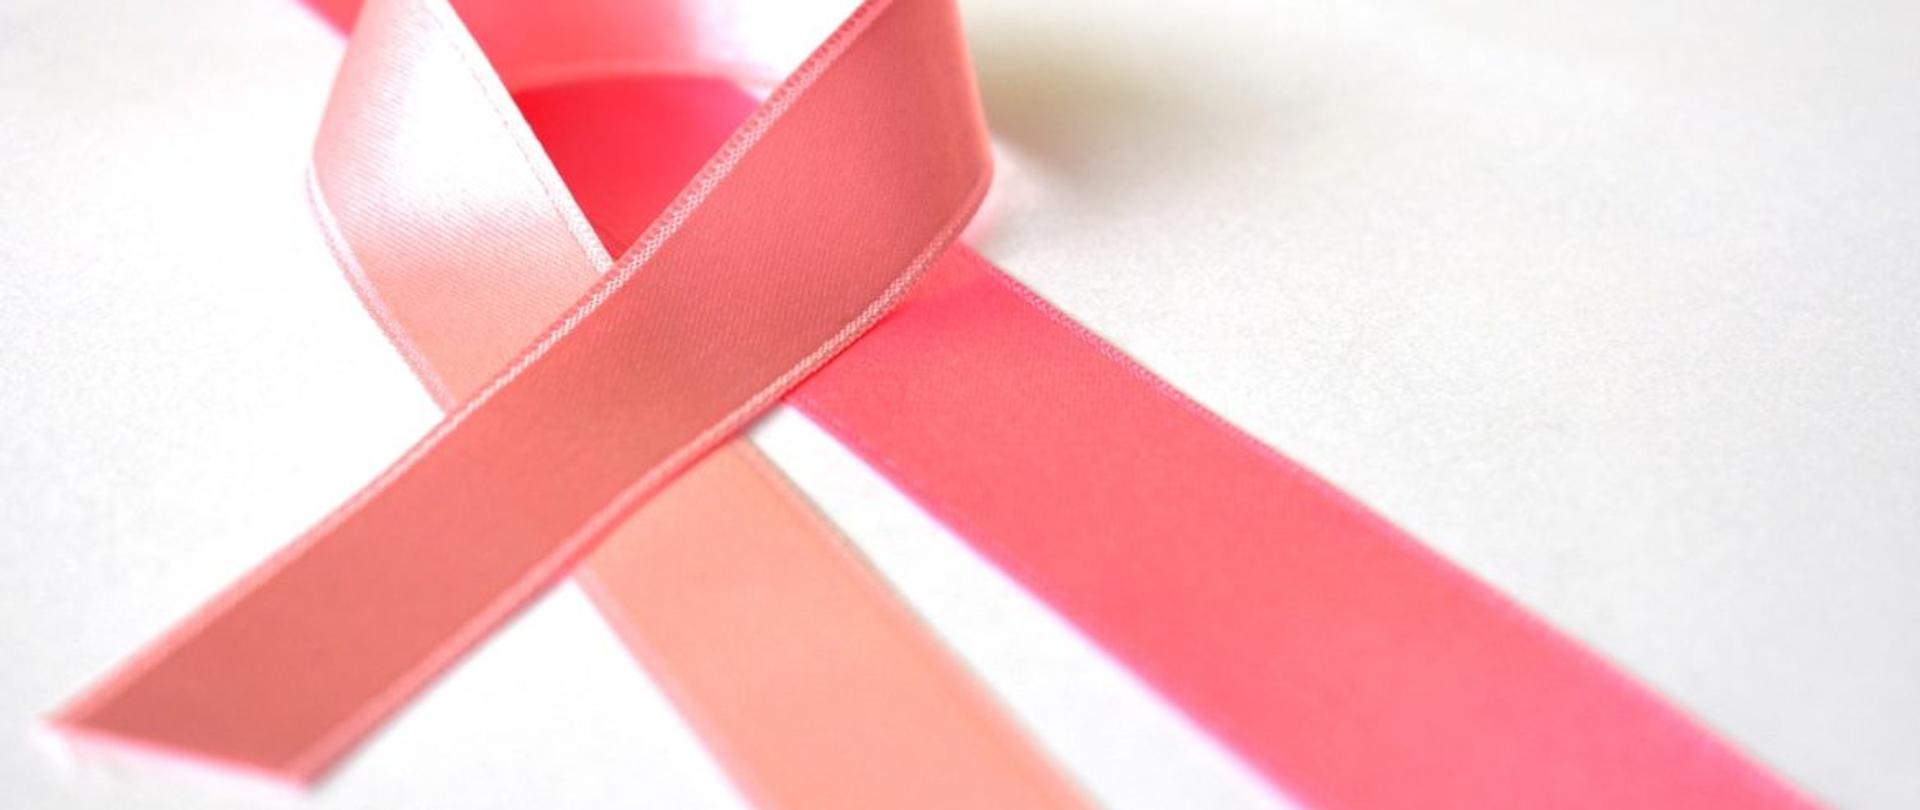 Na zdjęciu znajduje się różowa wstążka, która jest spleciona w charakterystyczny sposób dla akcji propagującej miesiąc świadomości raka piersi. Wstążka znajduje się na białej powierzchni.